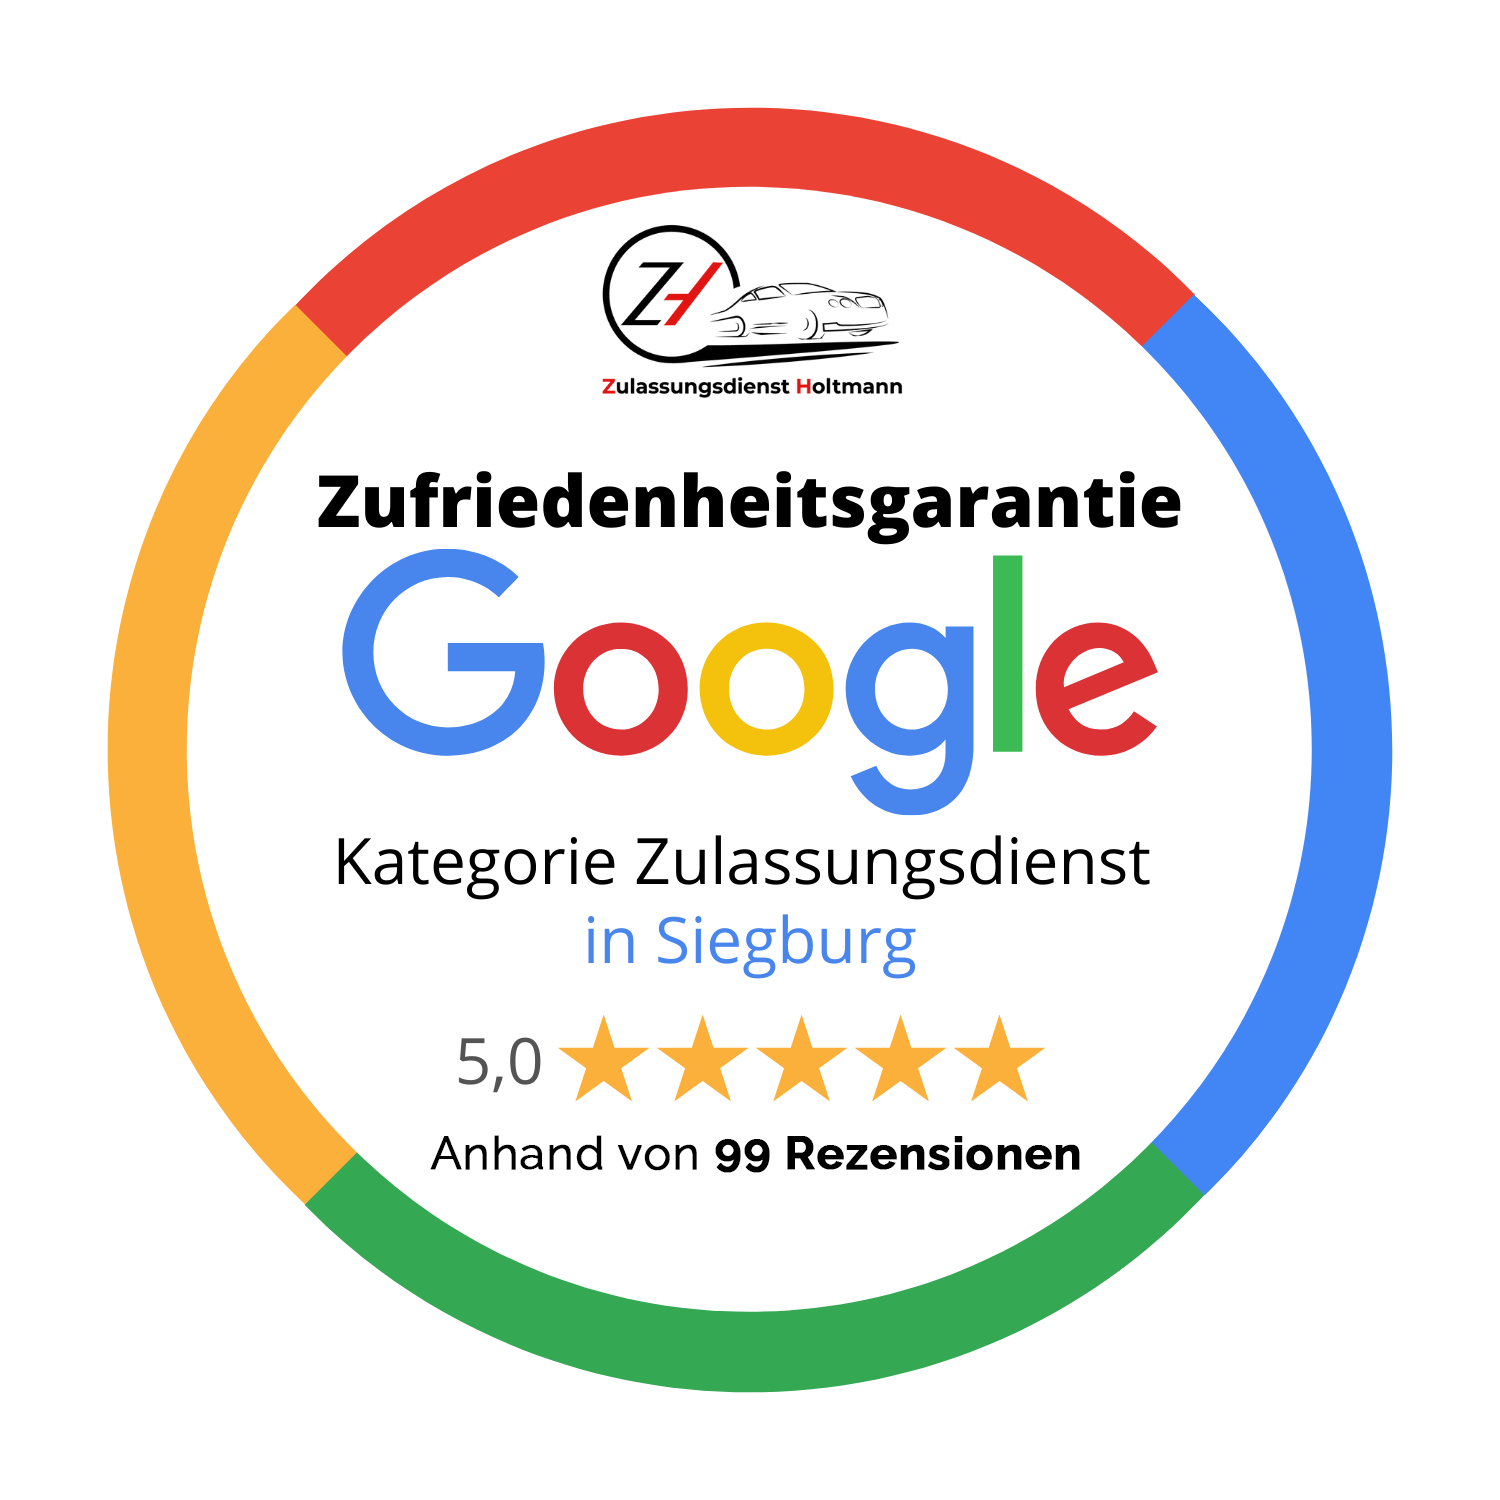 zufriedenheitsgarantie-google-zulassungsdienst-holtmann